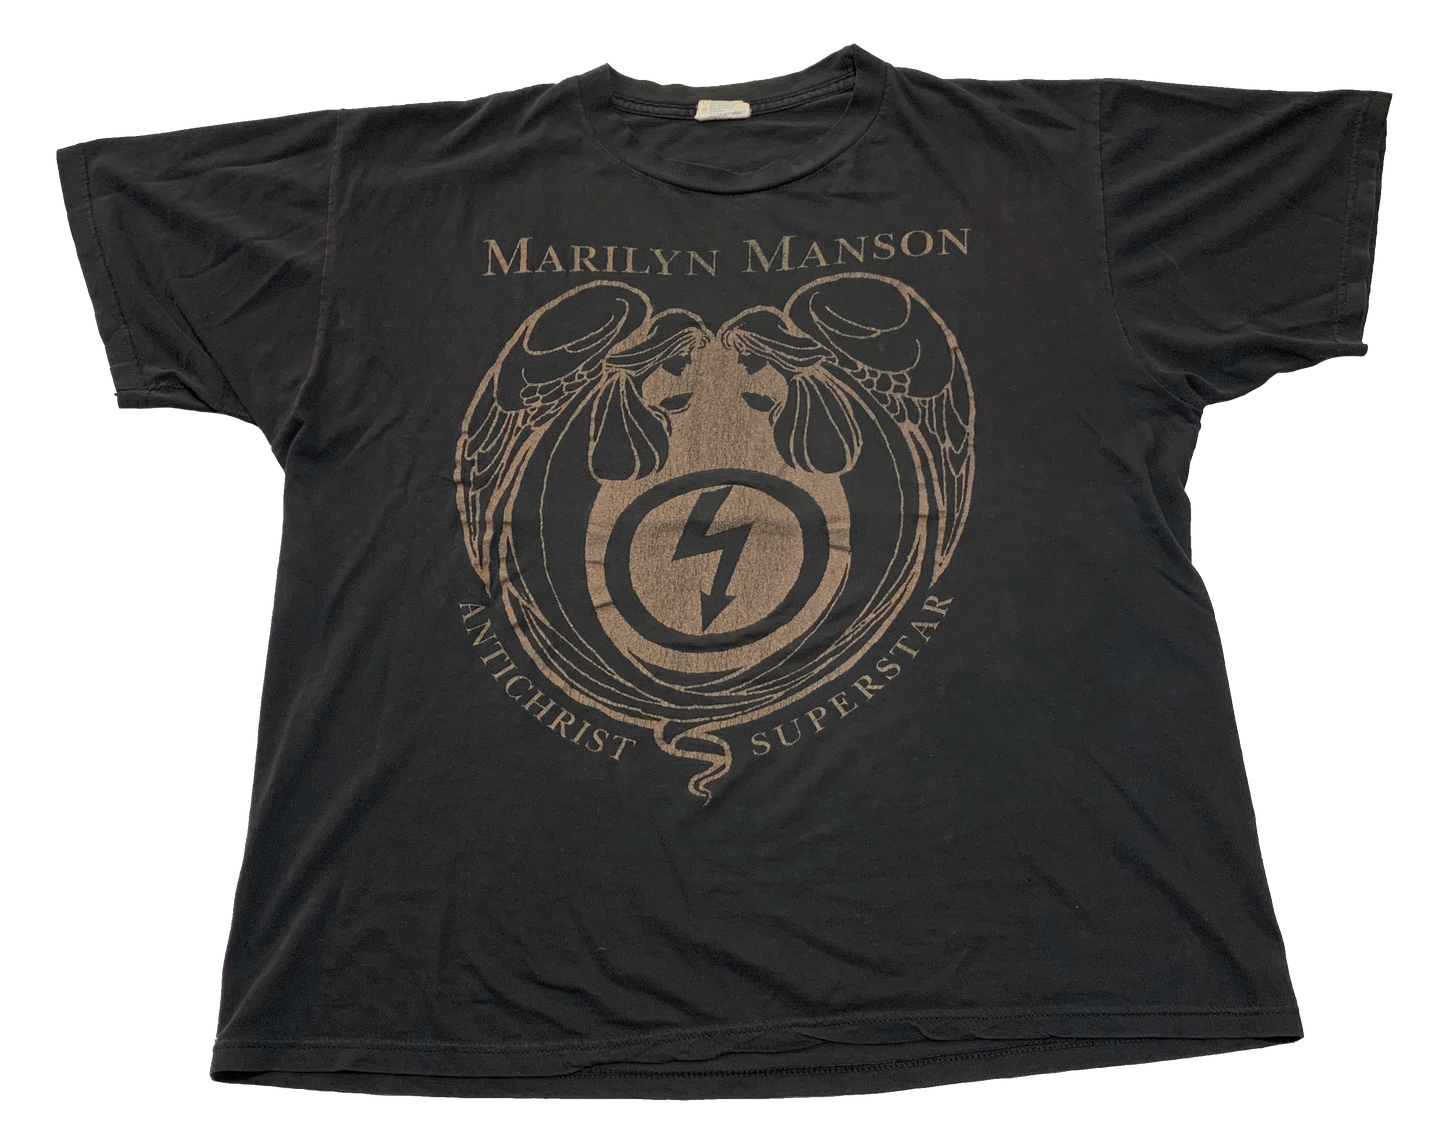 MARILYN MANSON 「ANTICHRIST SUPERSTAR」XL